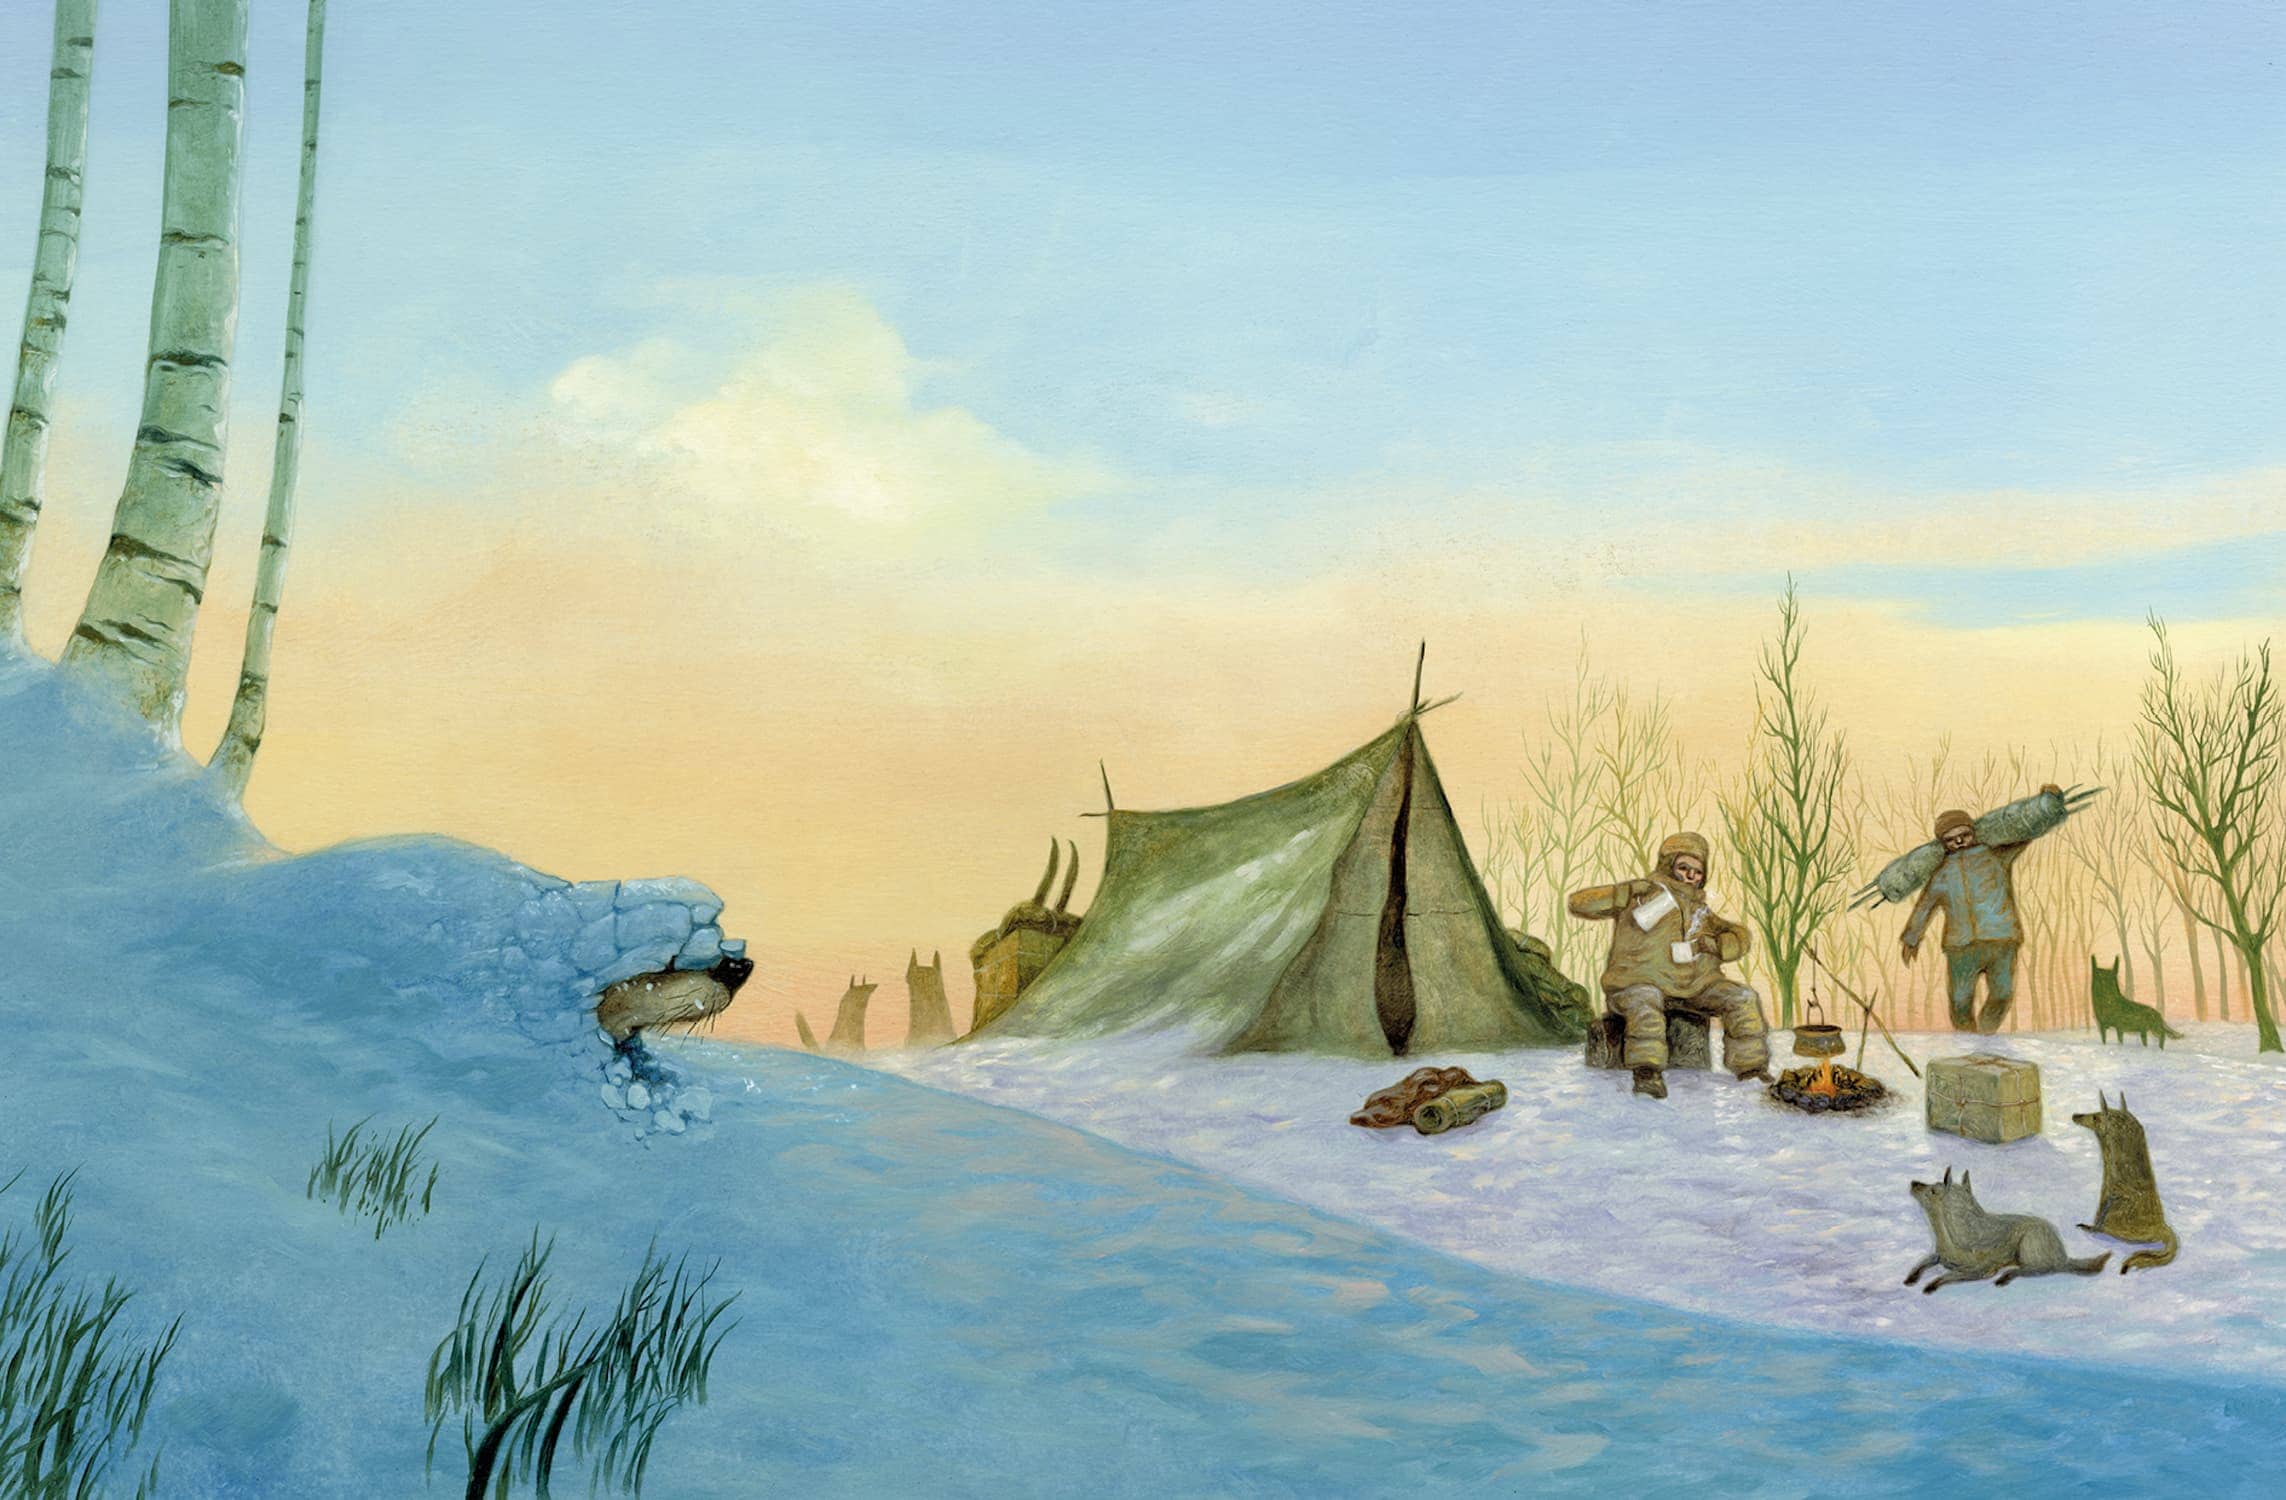 "Il richiamo della foresta" di Jack London, illustrato da Roger Olmos (Logos)